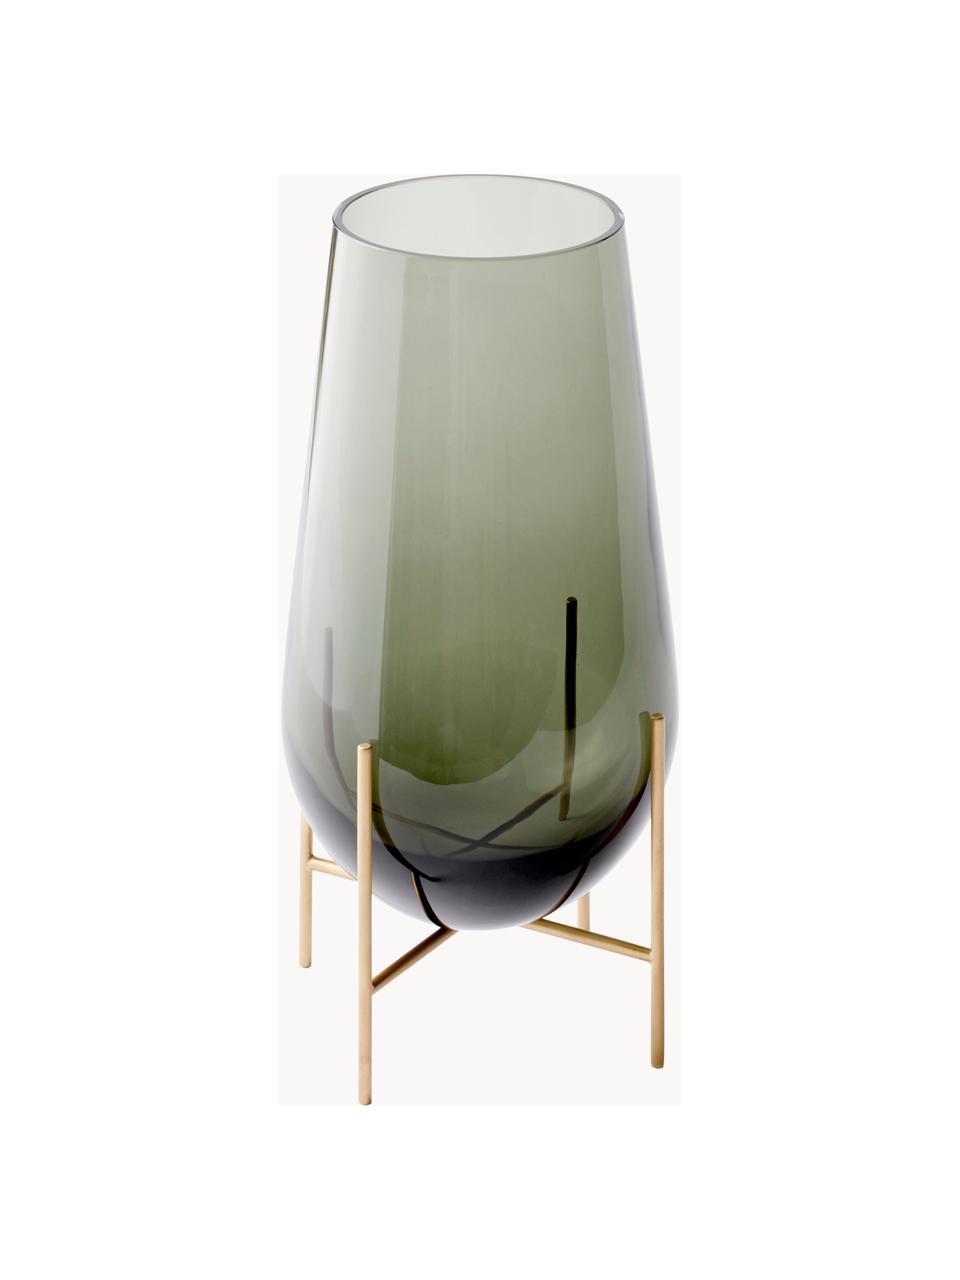 Ručně foukaná podlahová váza Échasse, V 44 cm, Olivově zelená, transparentní, Ø 22 cm, V 44 cm